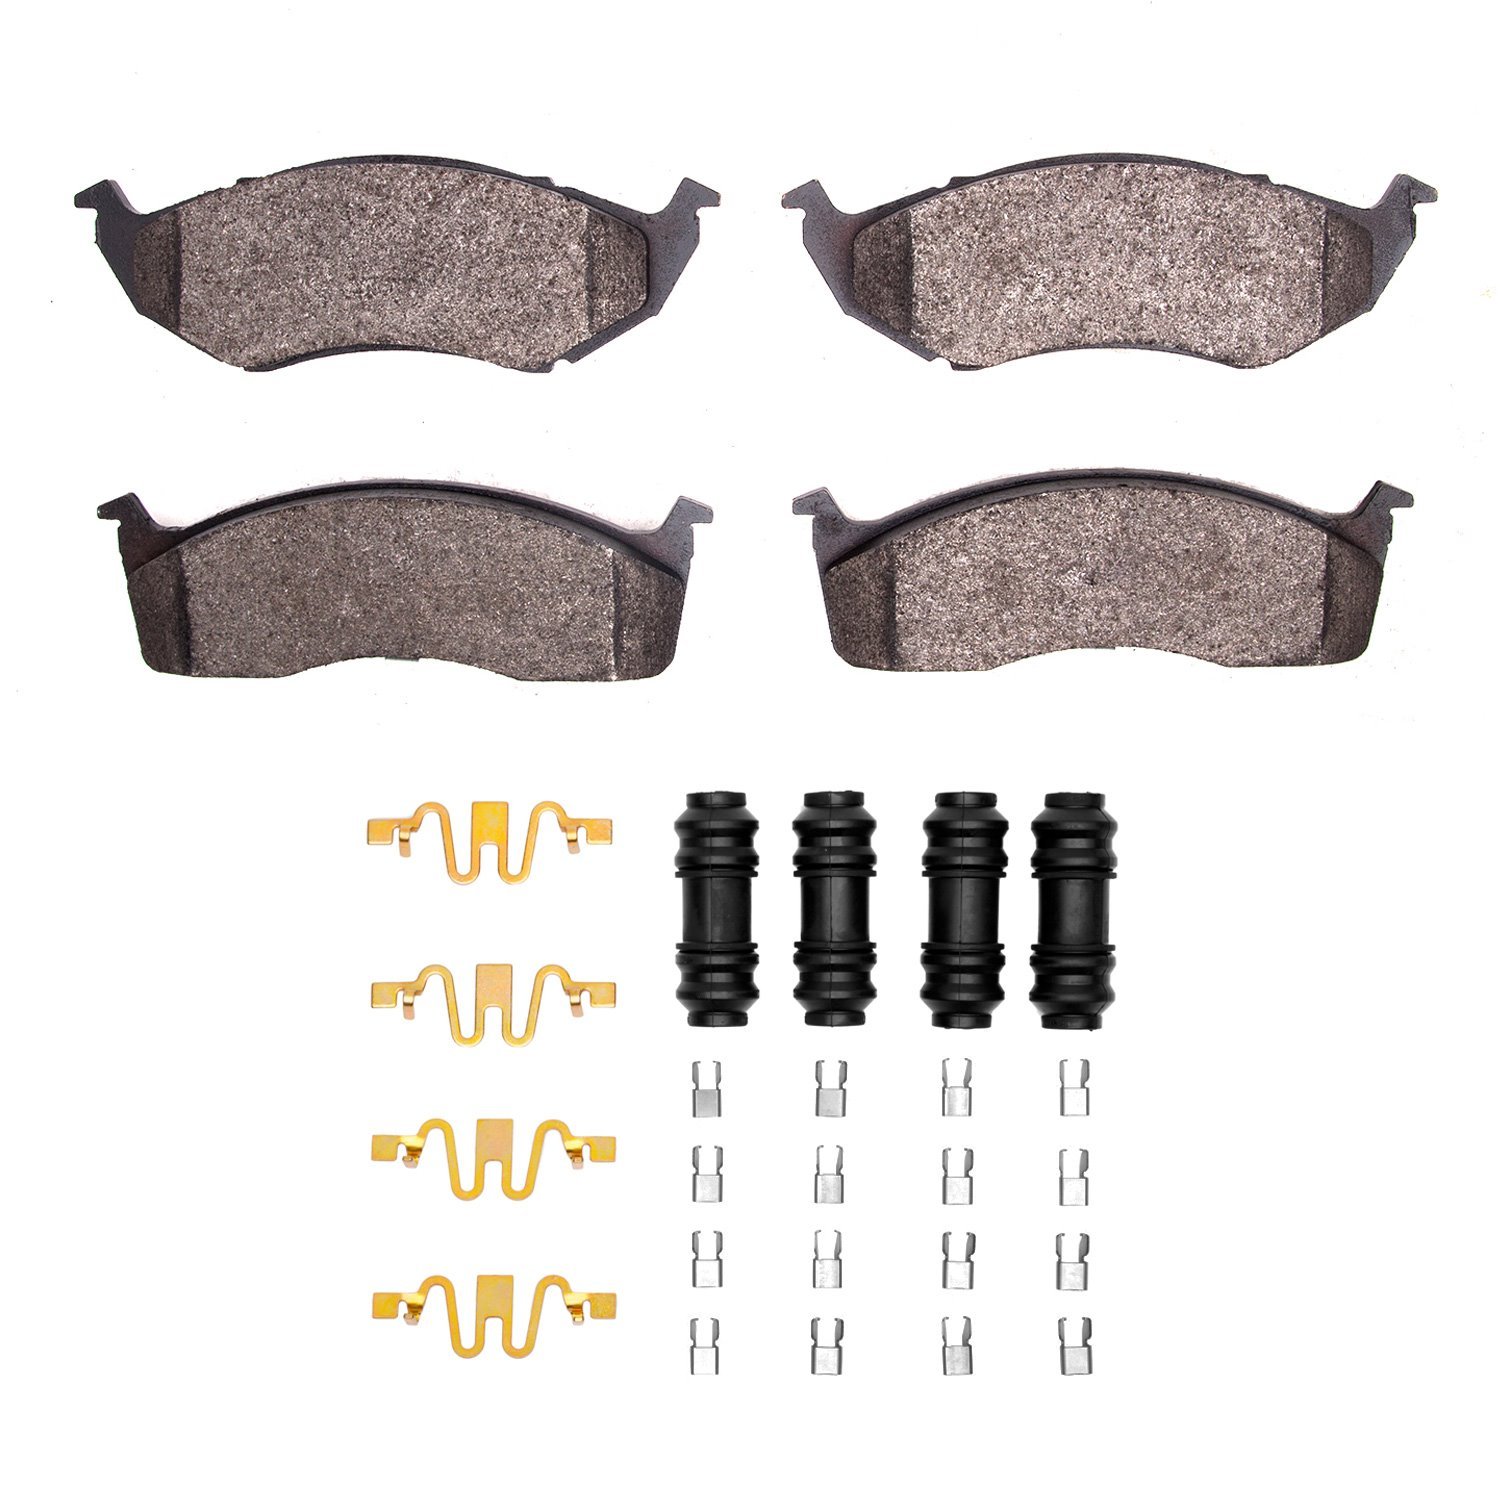 Ceramic Brake Pads & Hardware Kit, 1993-2002 Mopar, Position: Front